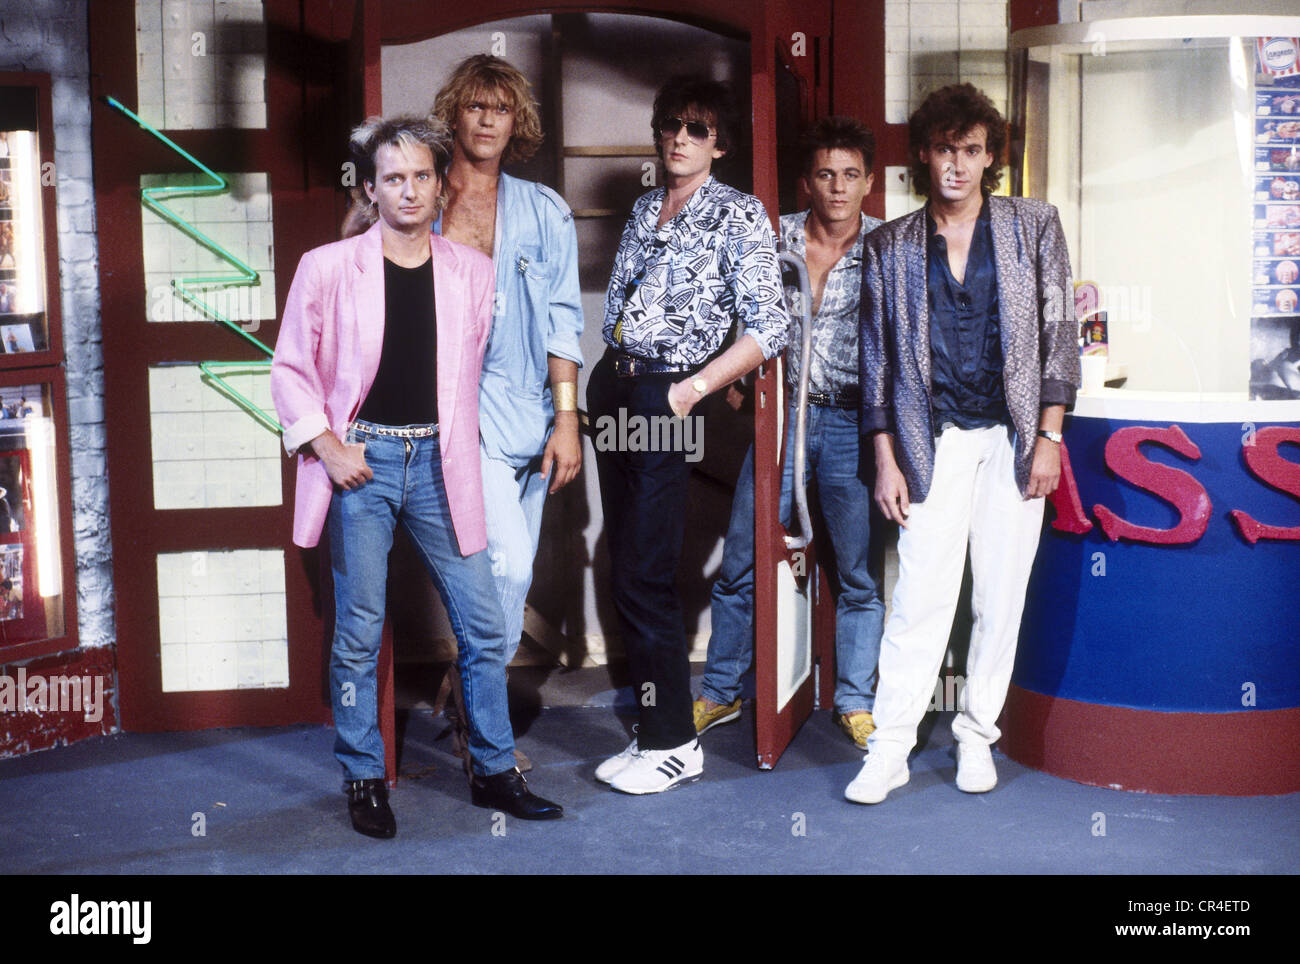 Münchener Freiheit, band tedesca, fondata nel 1981, Aron Strobel, Alex Grünwald, Rennie Hatzke, Micha Kunzi, Stefan Zauner, foto di gruppo, 1980s, Foto Stock